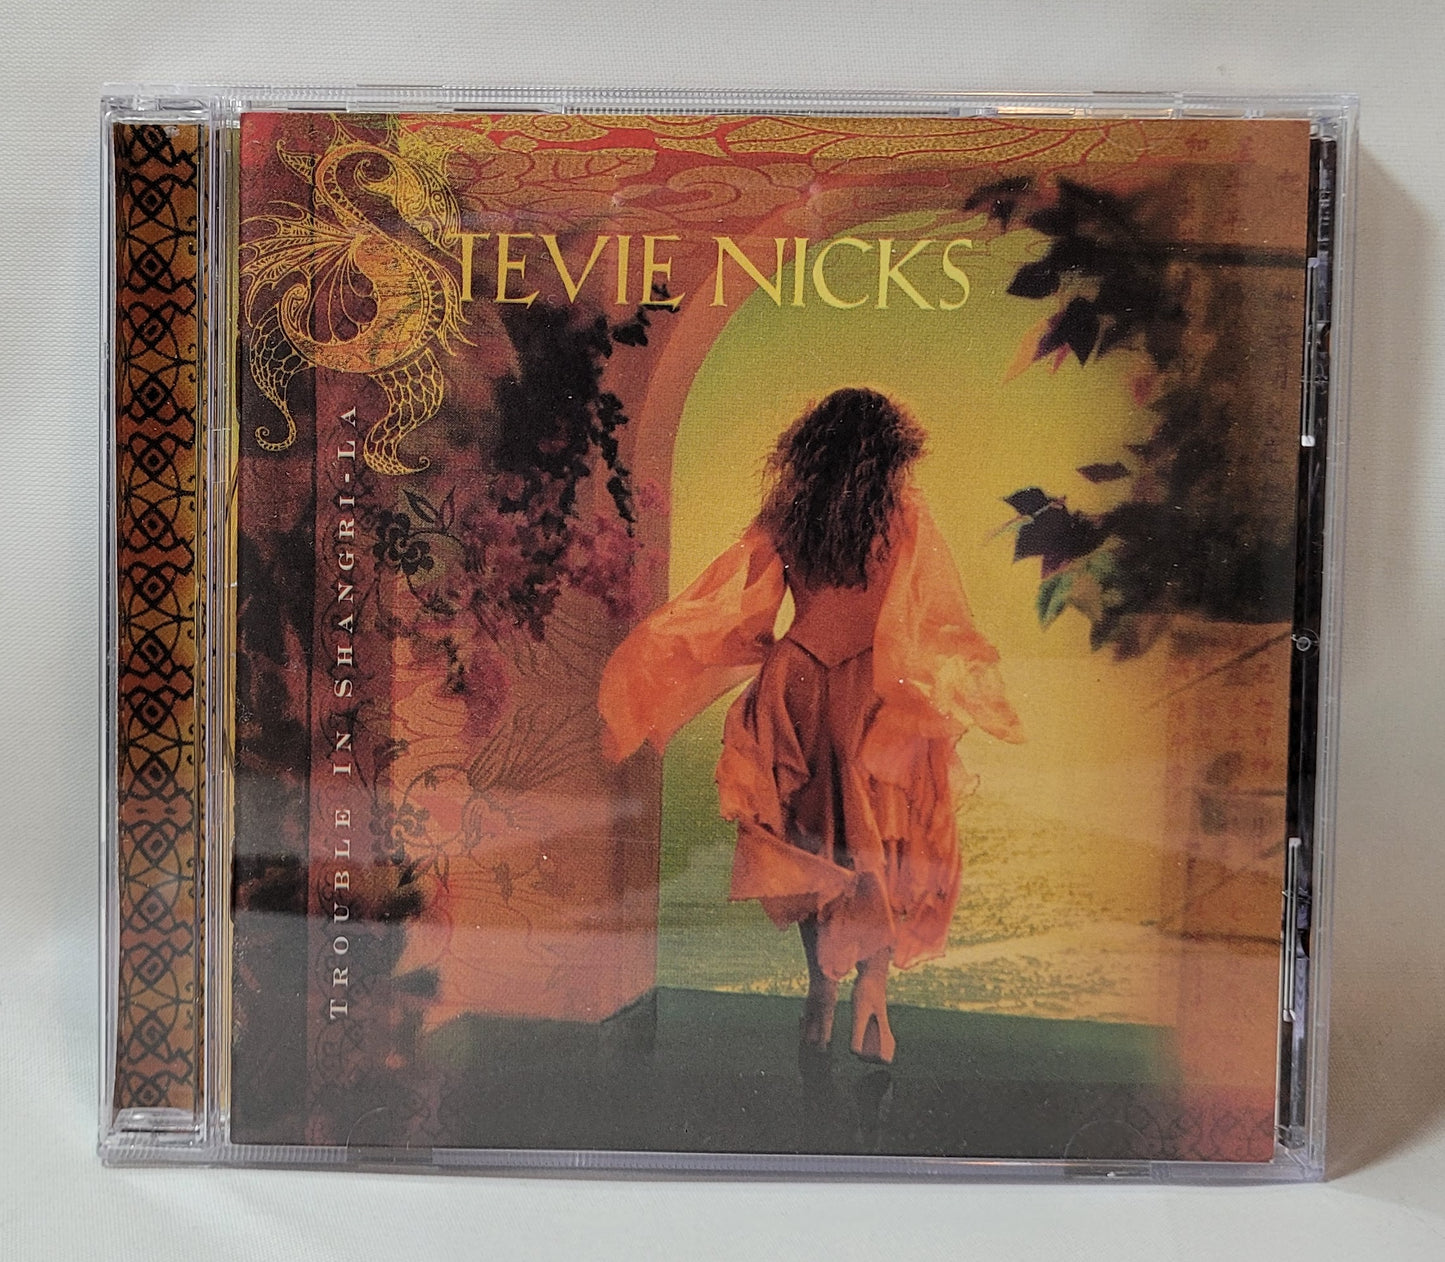 Stevie Nicks - Trouble in Shangri-La [CD]